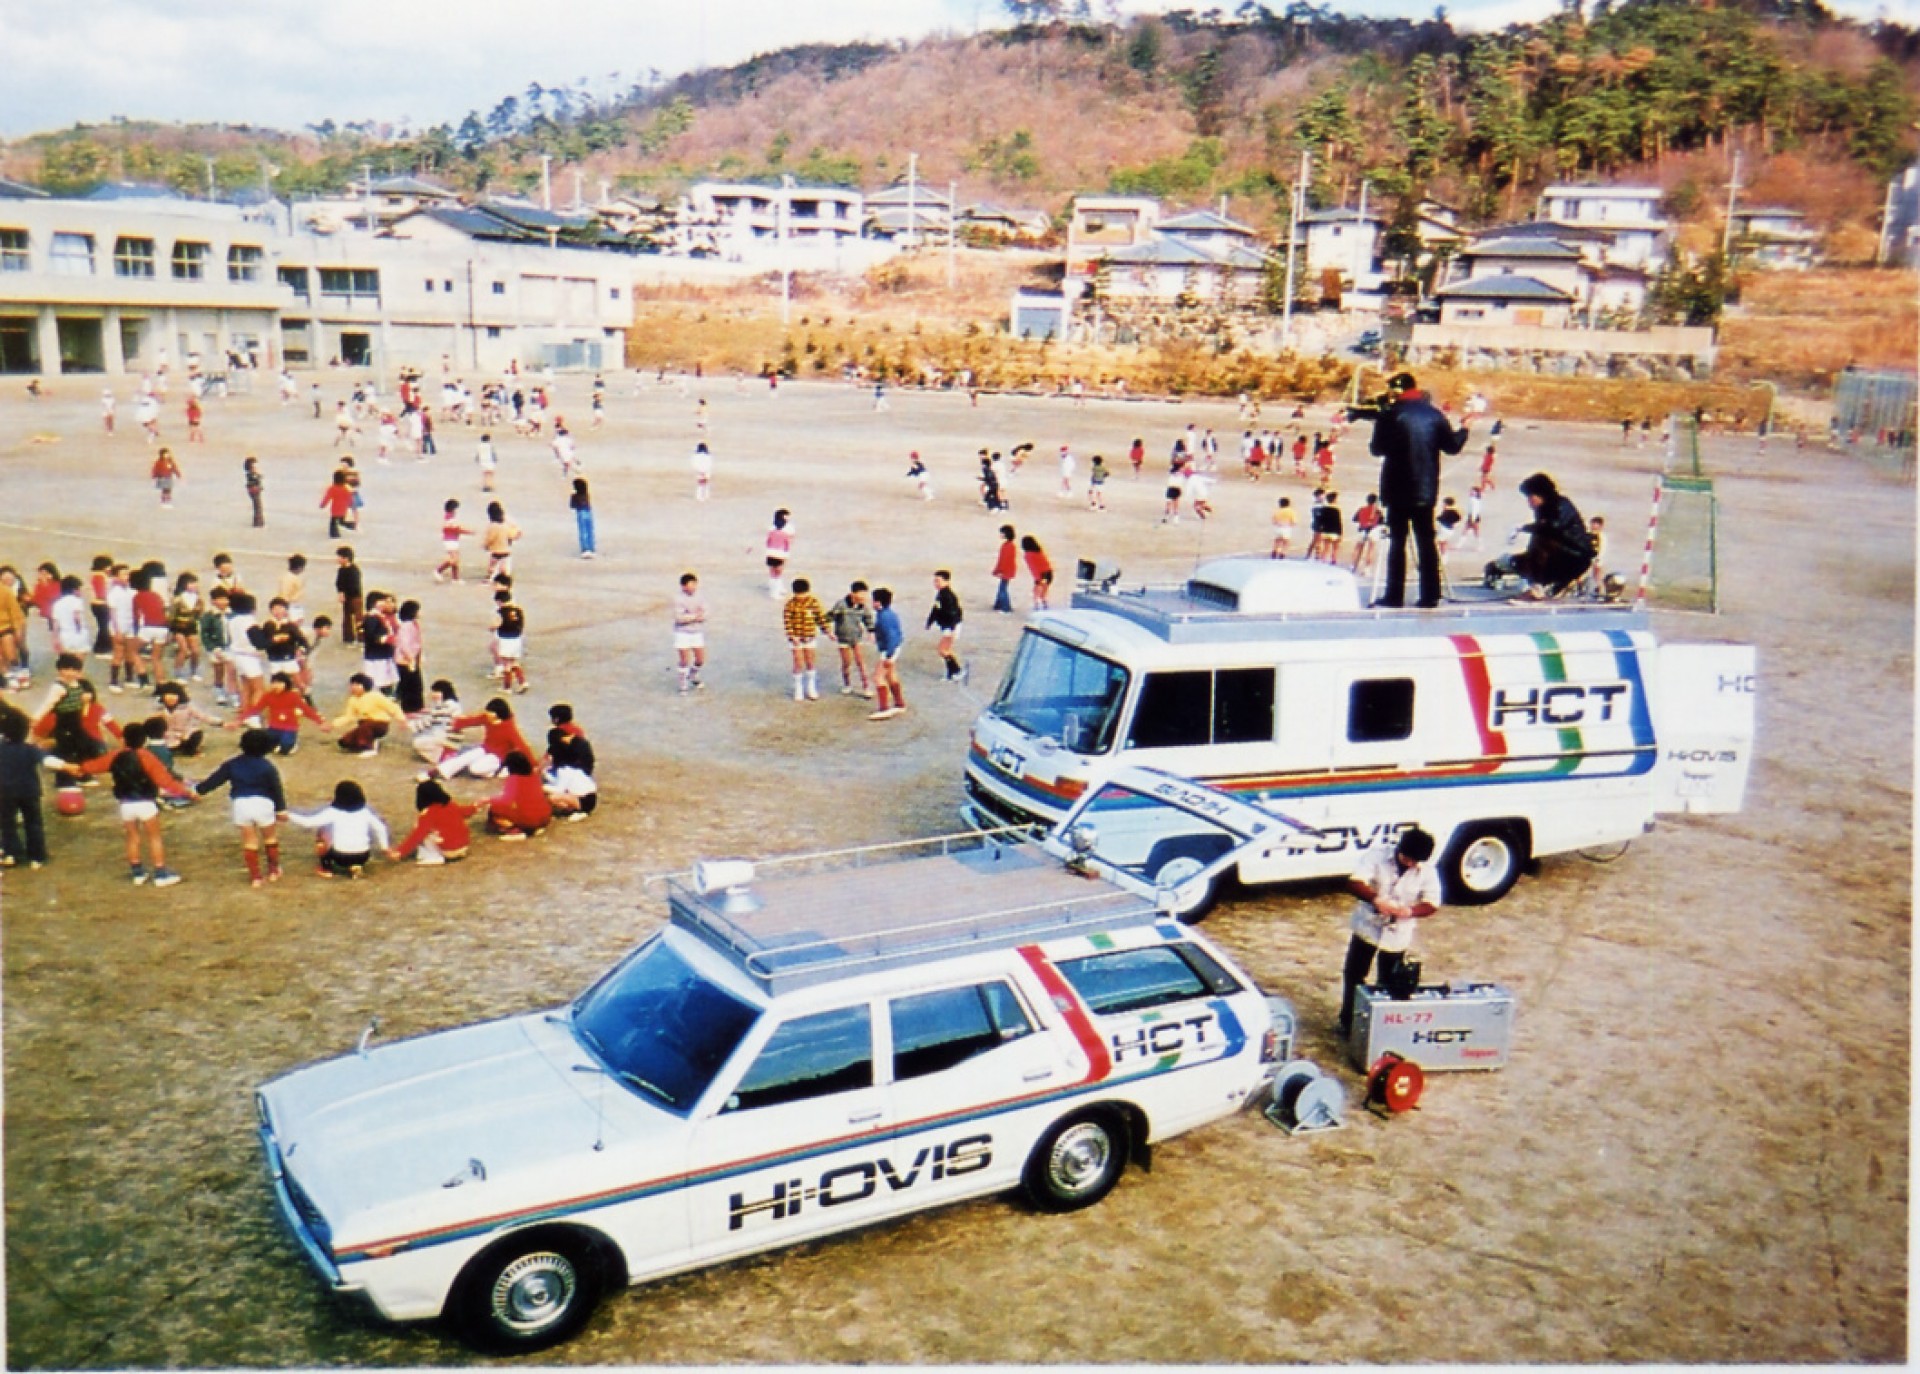 1978Hi-OVISの番組収録風景